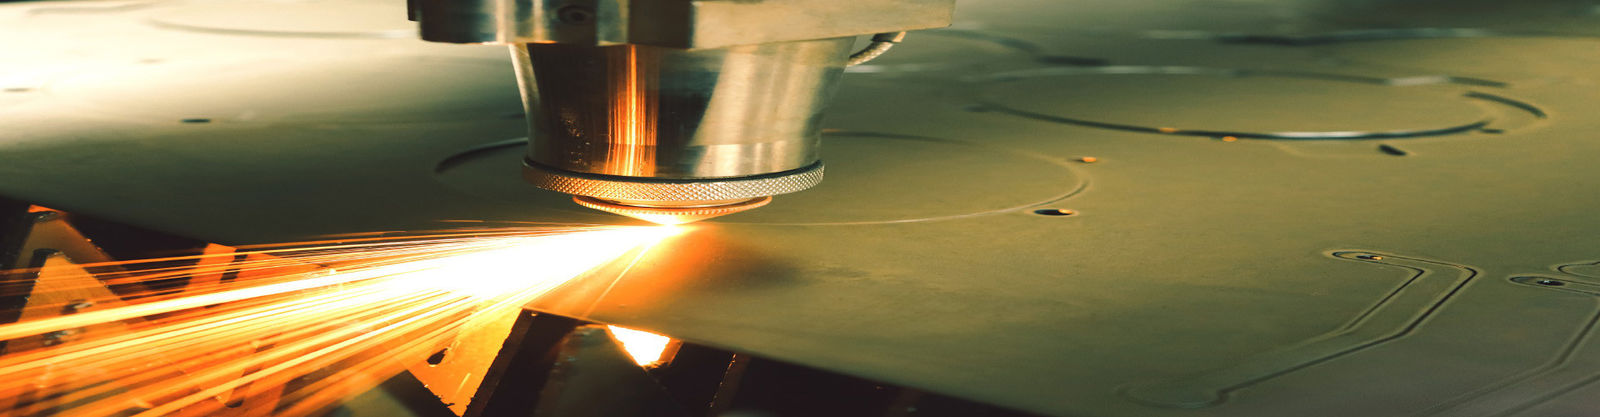 качество Изготовление металлического листа нержавеющей стали фабрика